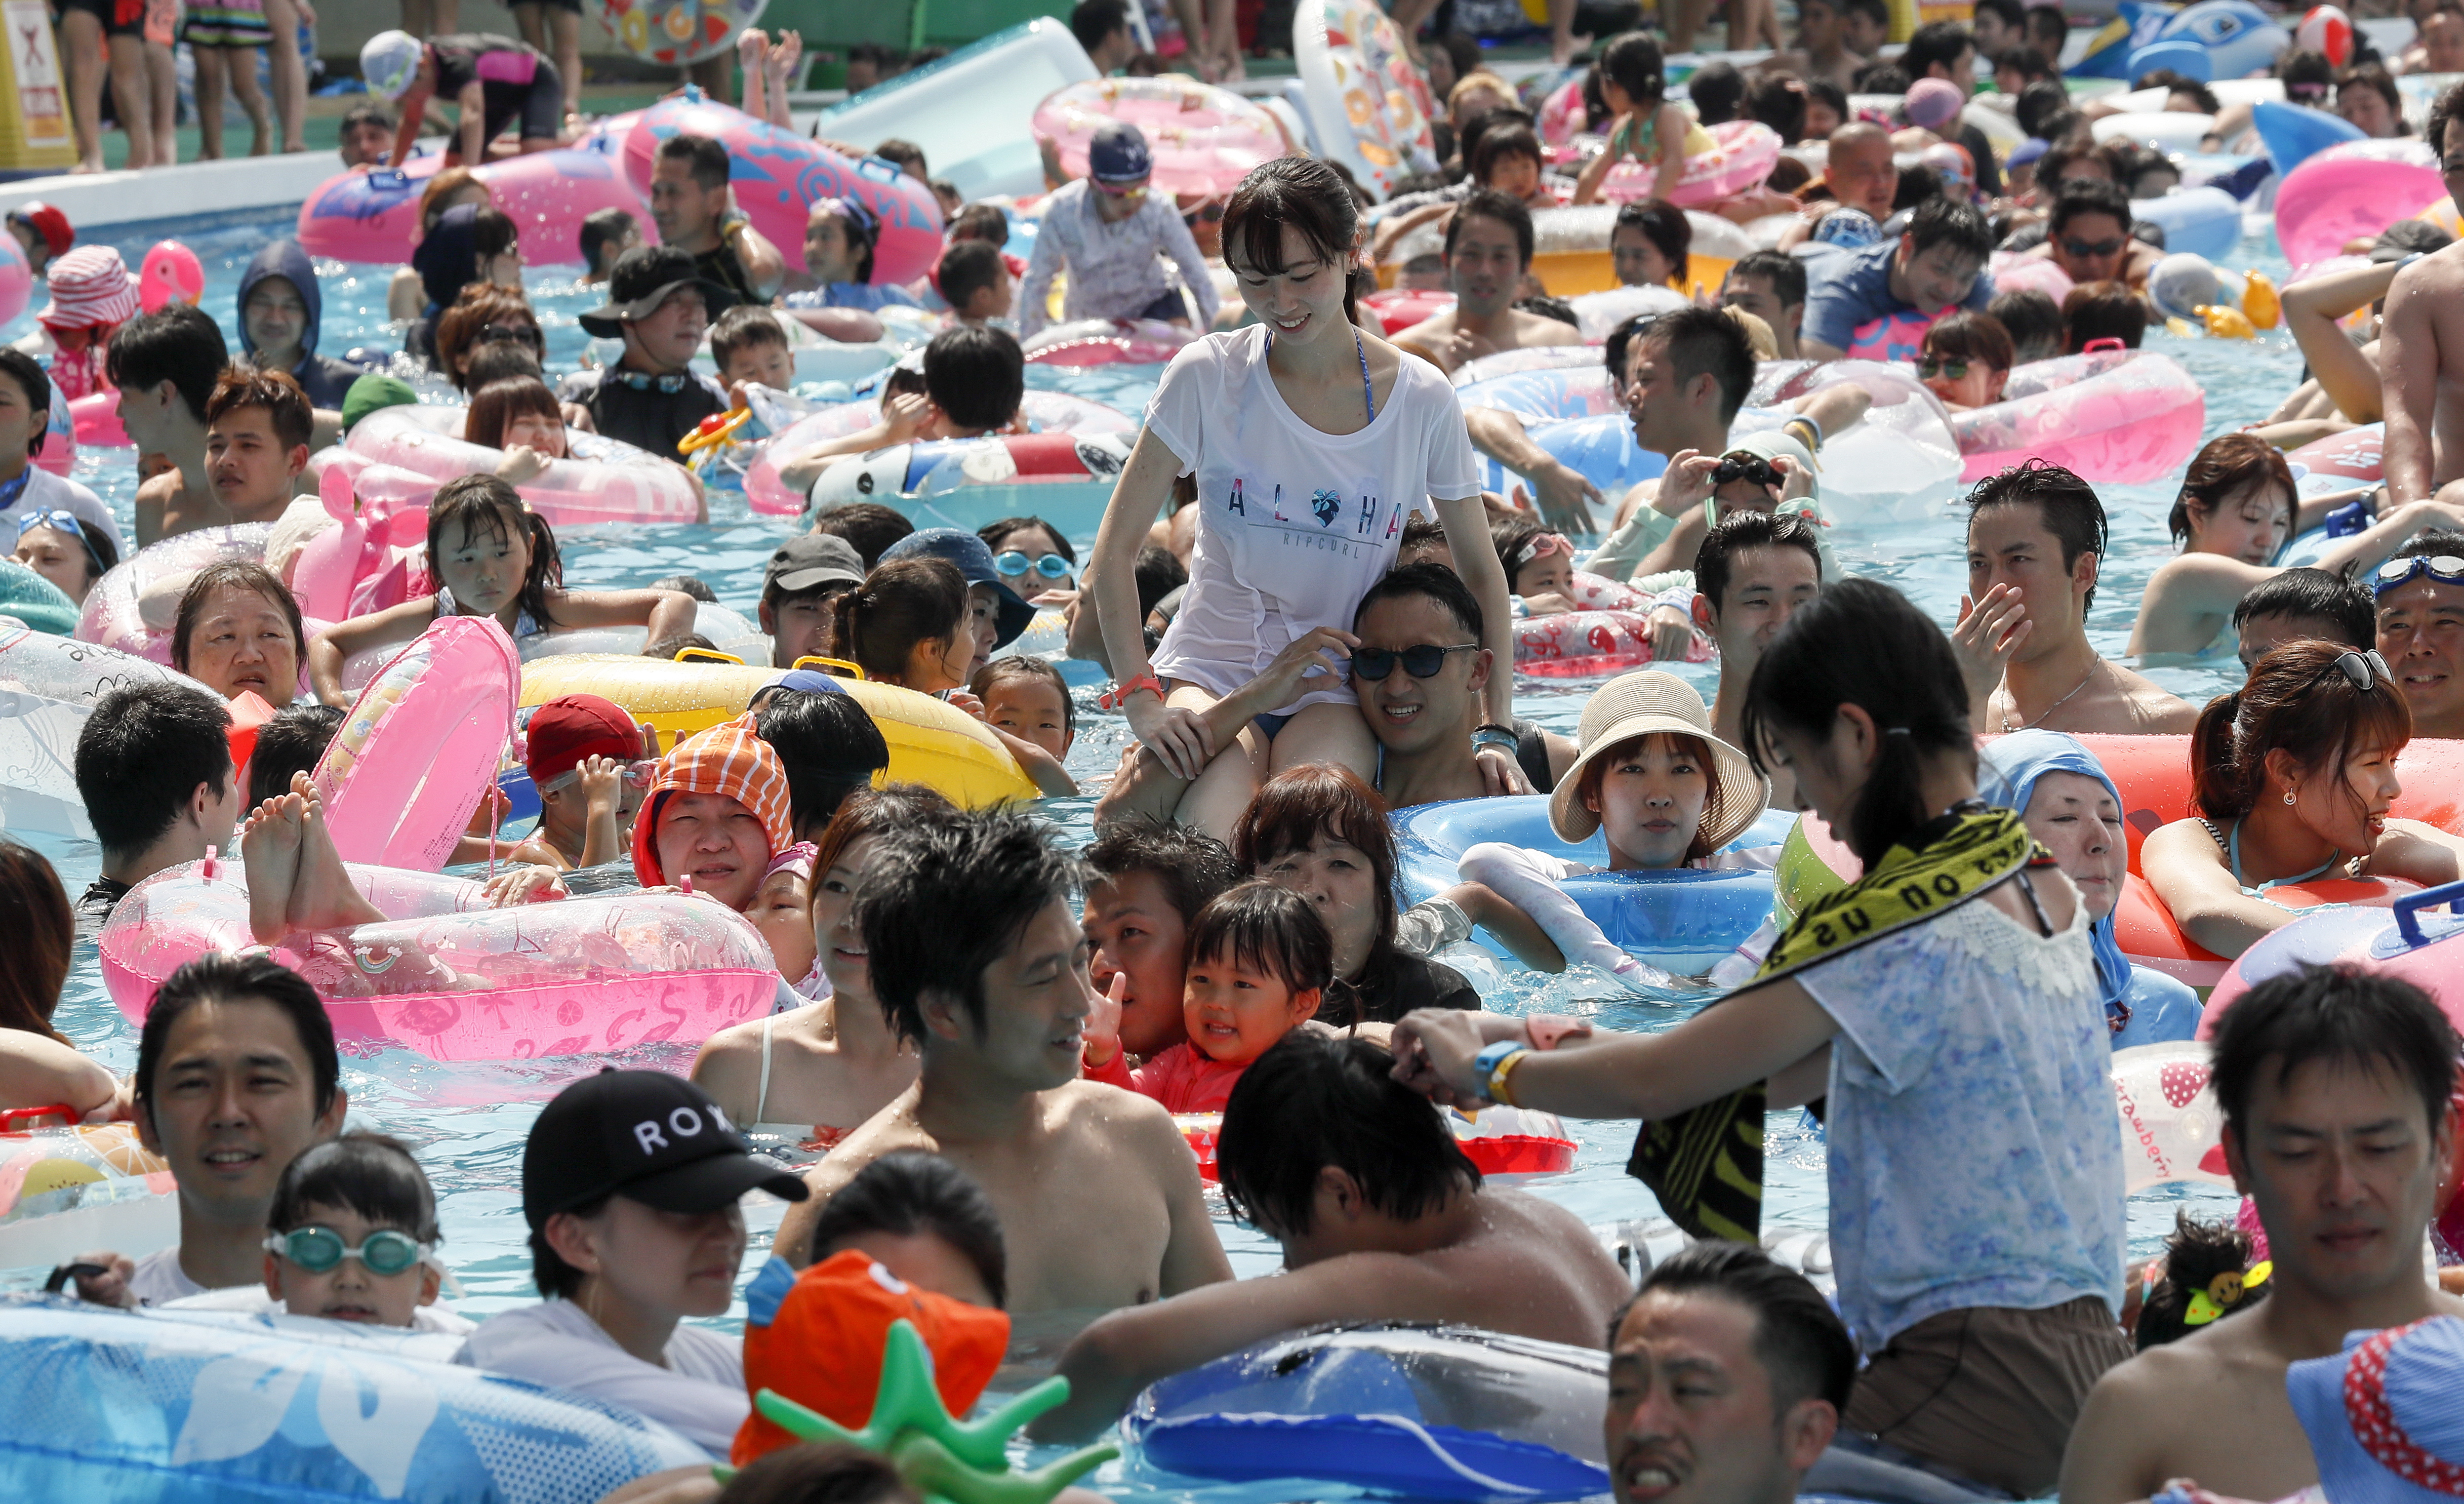 Гореща вълна премина през Япония. Температурите в някои части на страната достигнаха над 39 градуса по Целзий, което в съчетание с високата влажност създаде опасни условия, посочва японската метеорологична служба.

Много хора потърсиха спасение от жегите край най-близкия басейн.